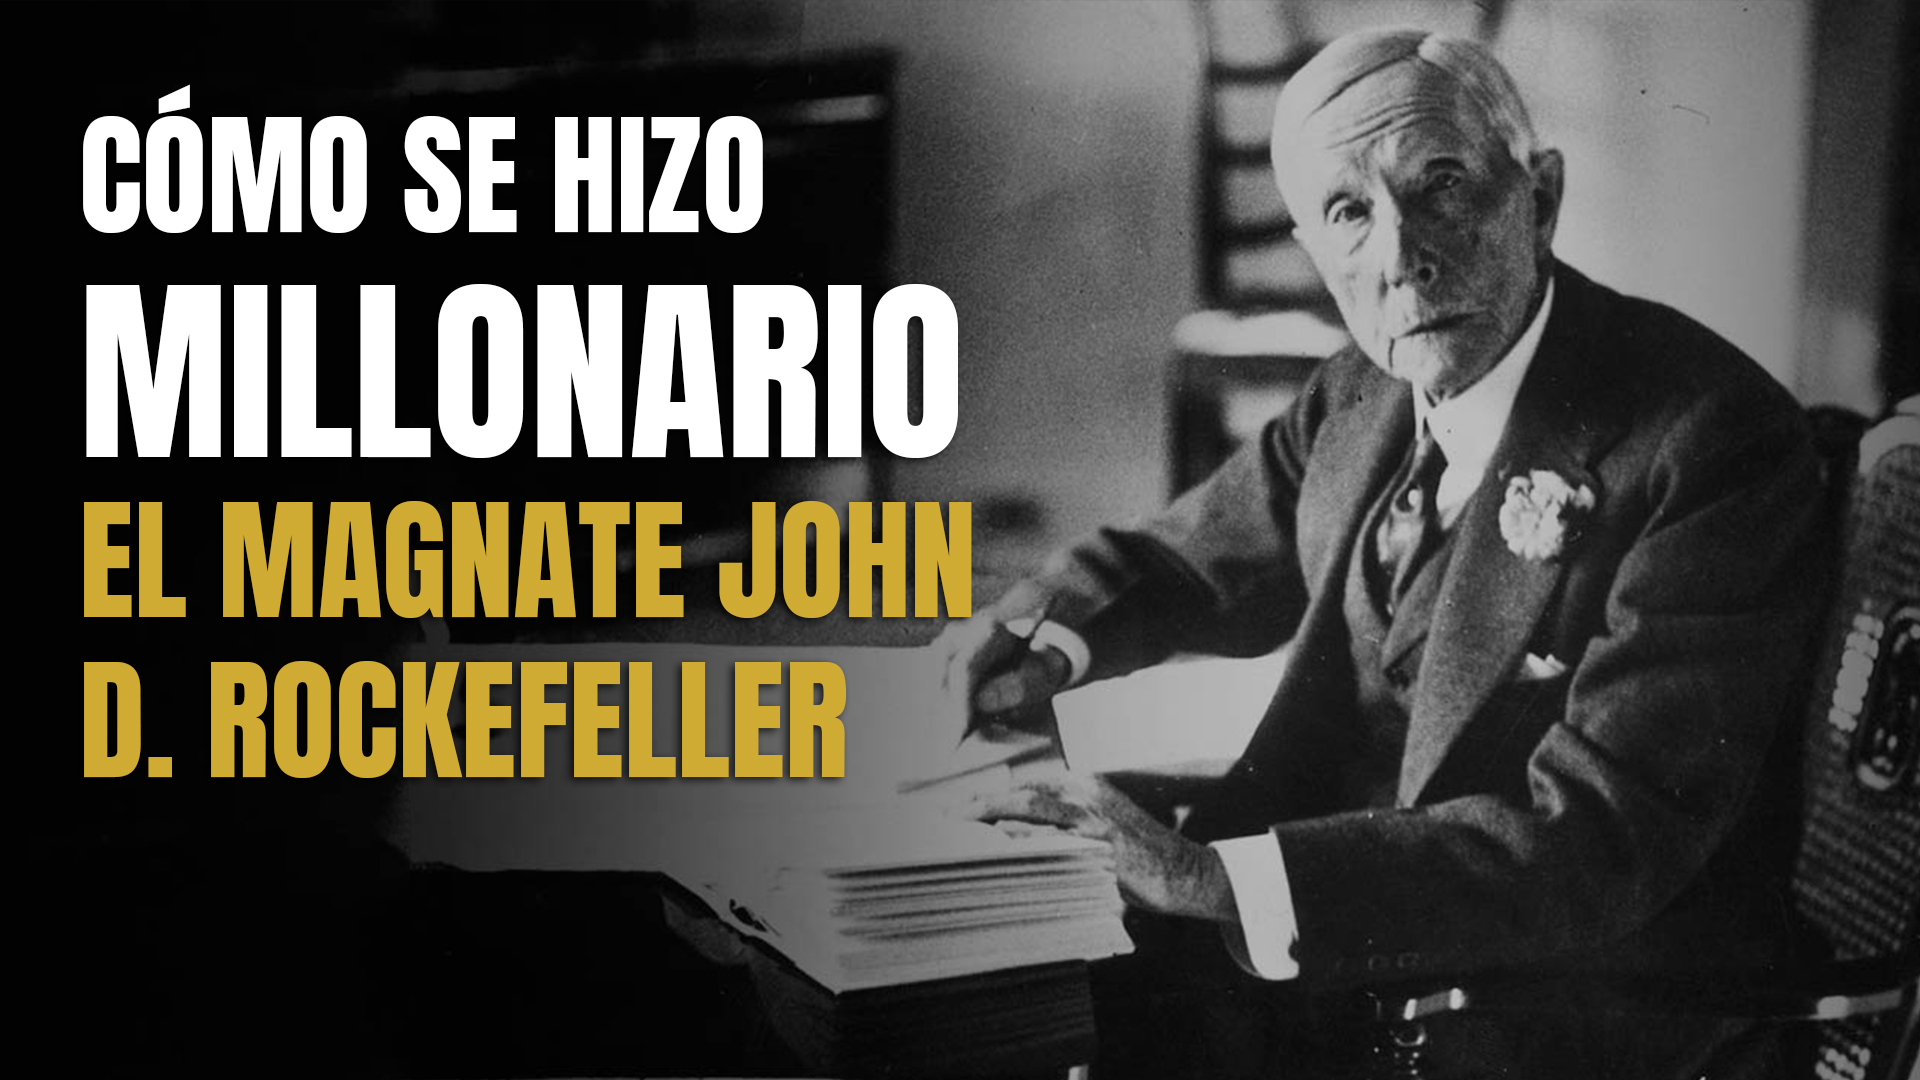 Corporación Universitaria U DE COLOMBIA - ¿Sabías que el famoso Rockefeller  empezó su carrera siendo un contador? John D. Rockefeller el fundador de  Standard Oil, una mega empresa que llegó a controlar